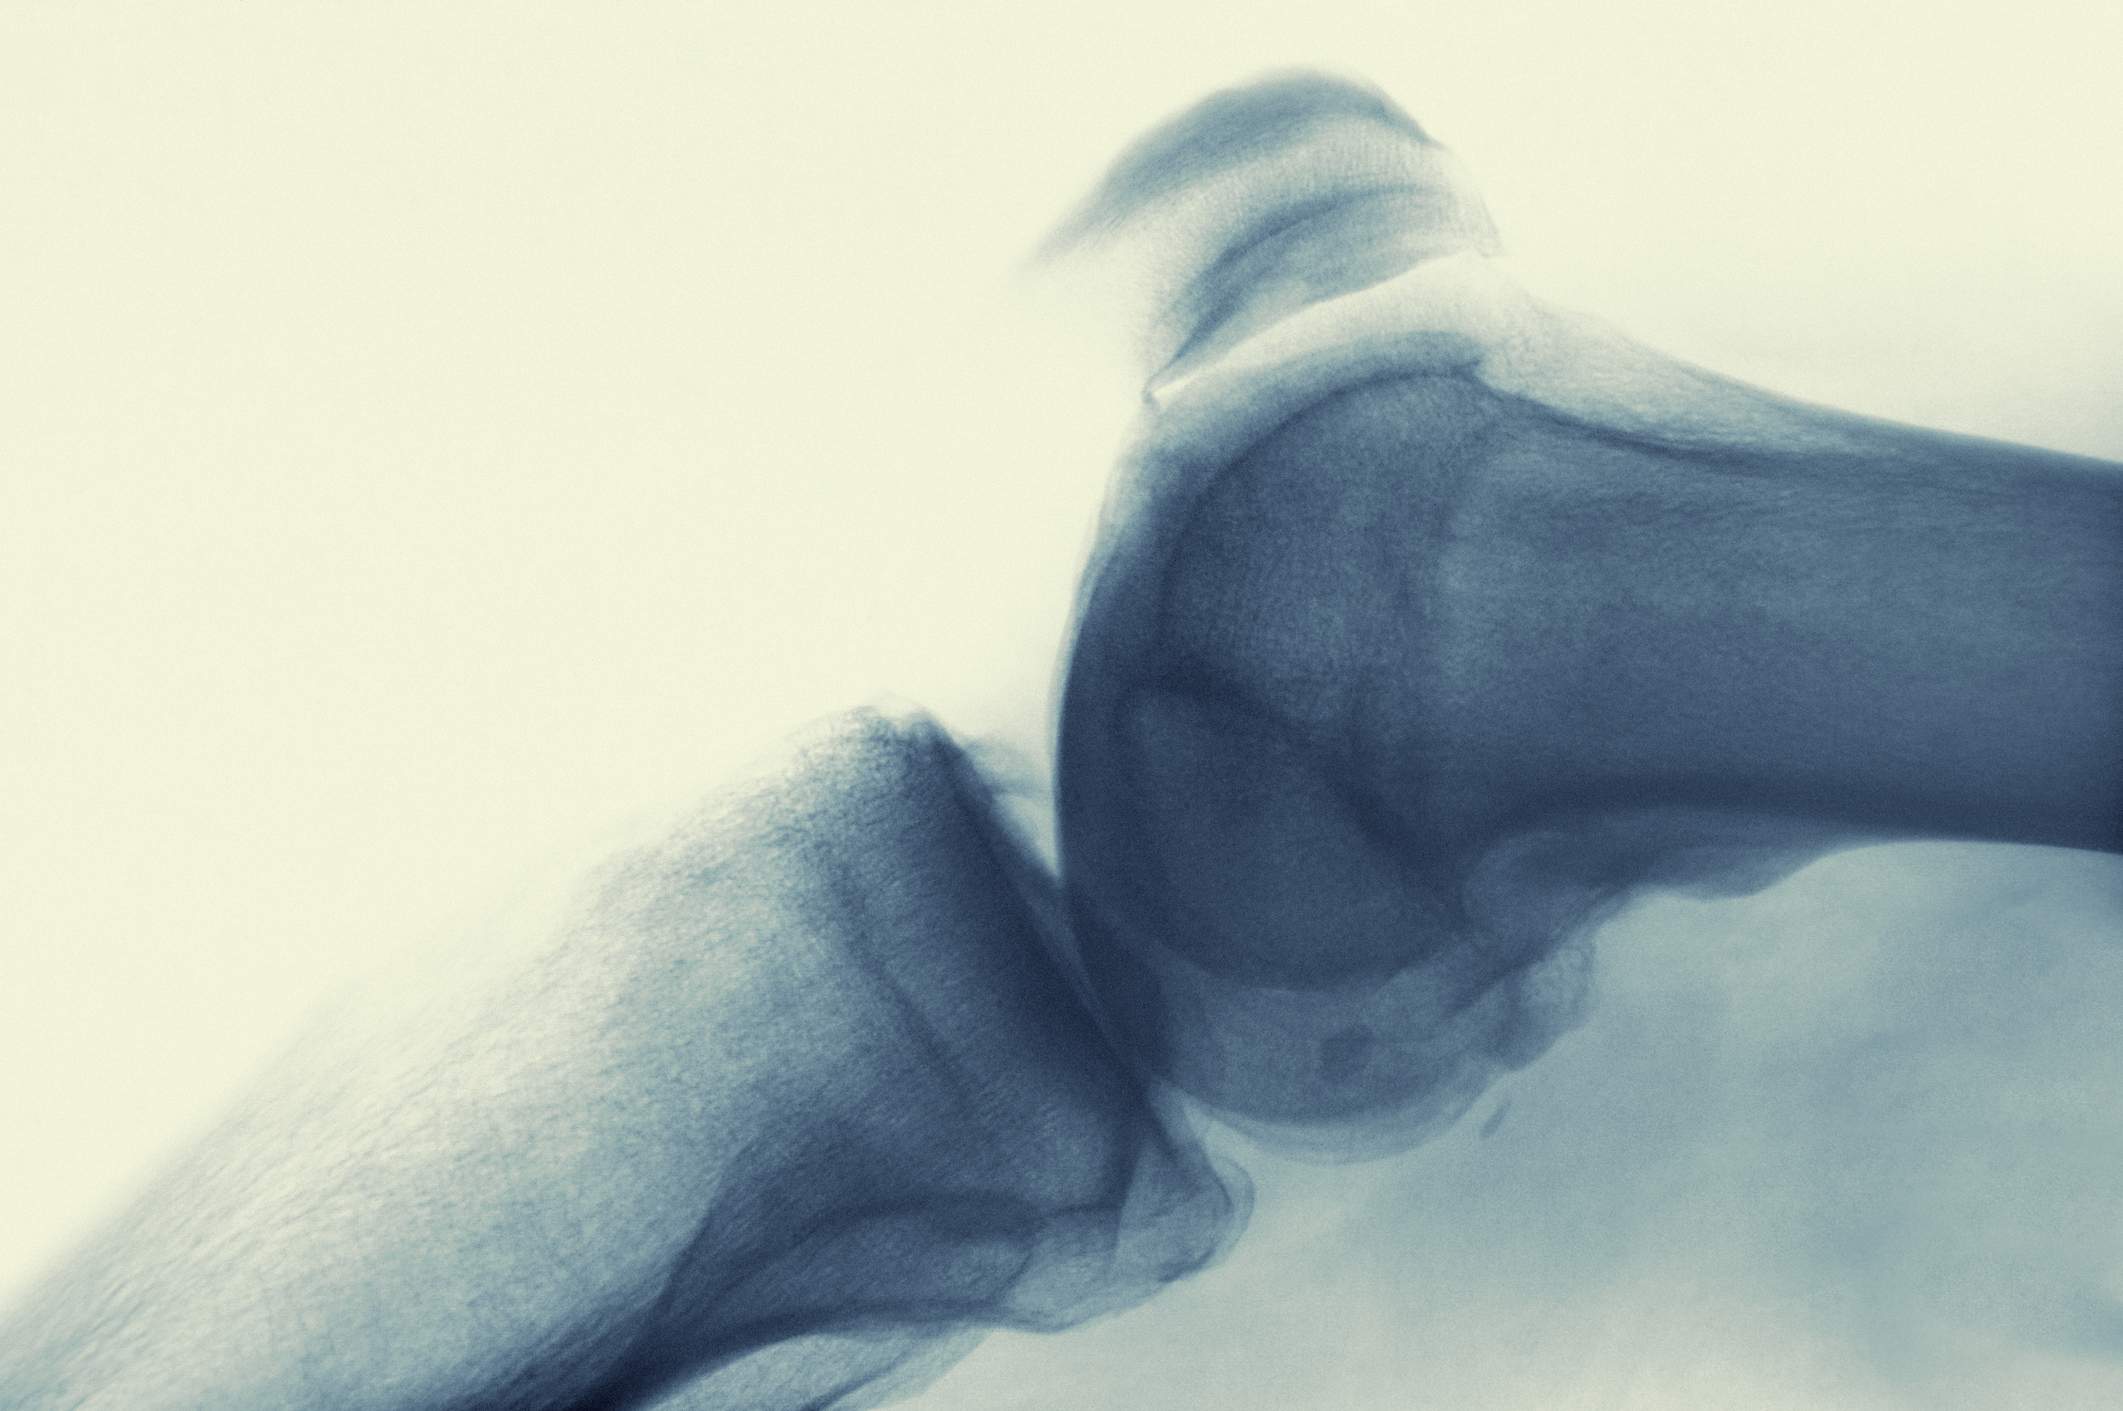 Slidgigt i knæet behandles ofte med GLA:D øvelser